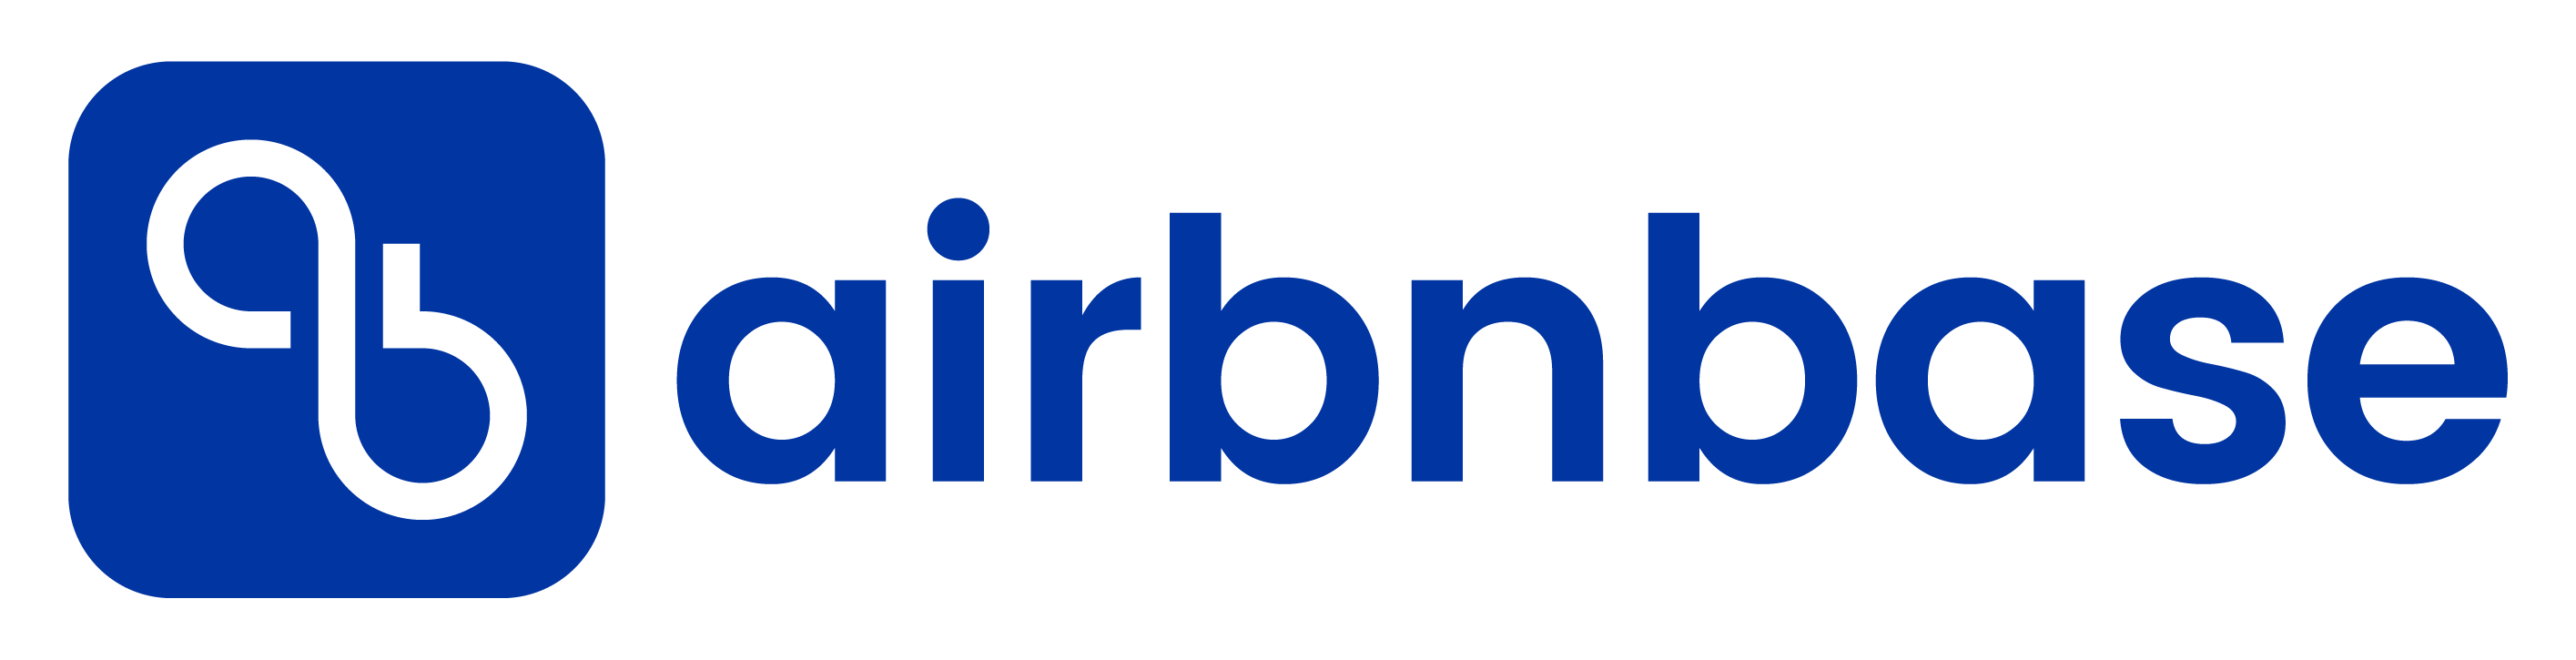 Airbnbase